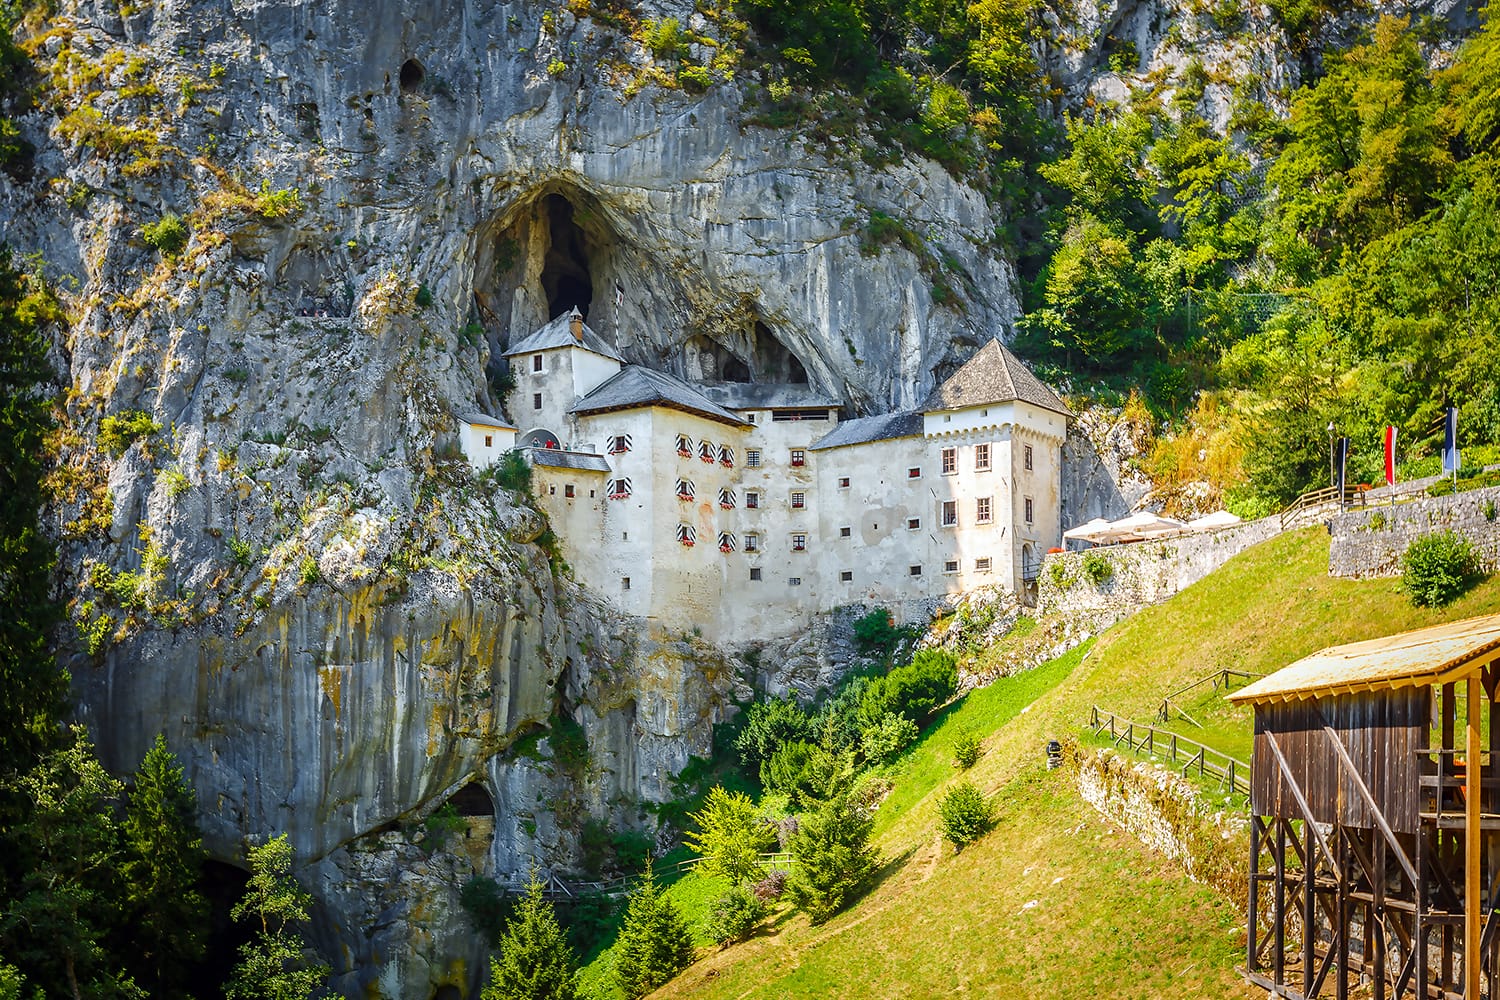 Predjama; castle at the cave mouth in Postojna, Slovenia in springtime